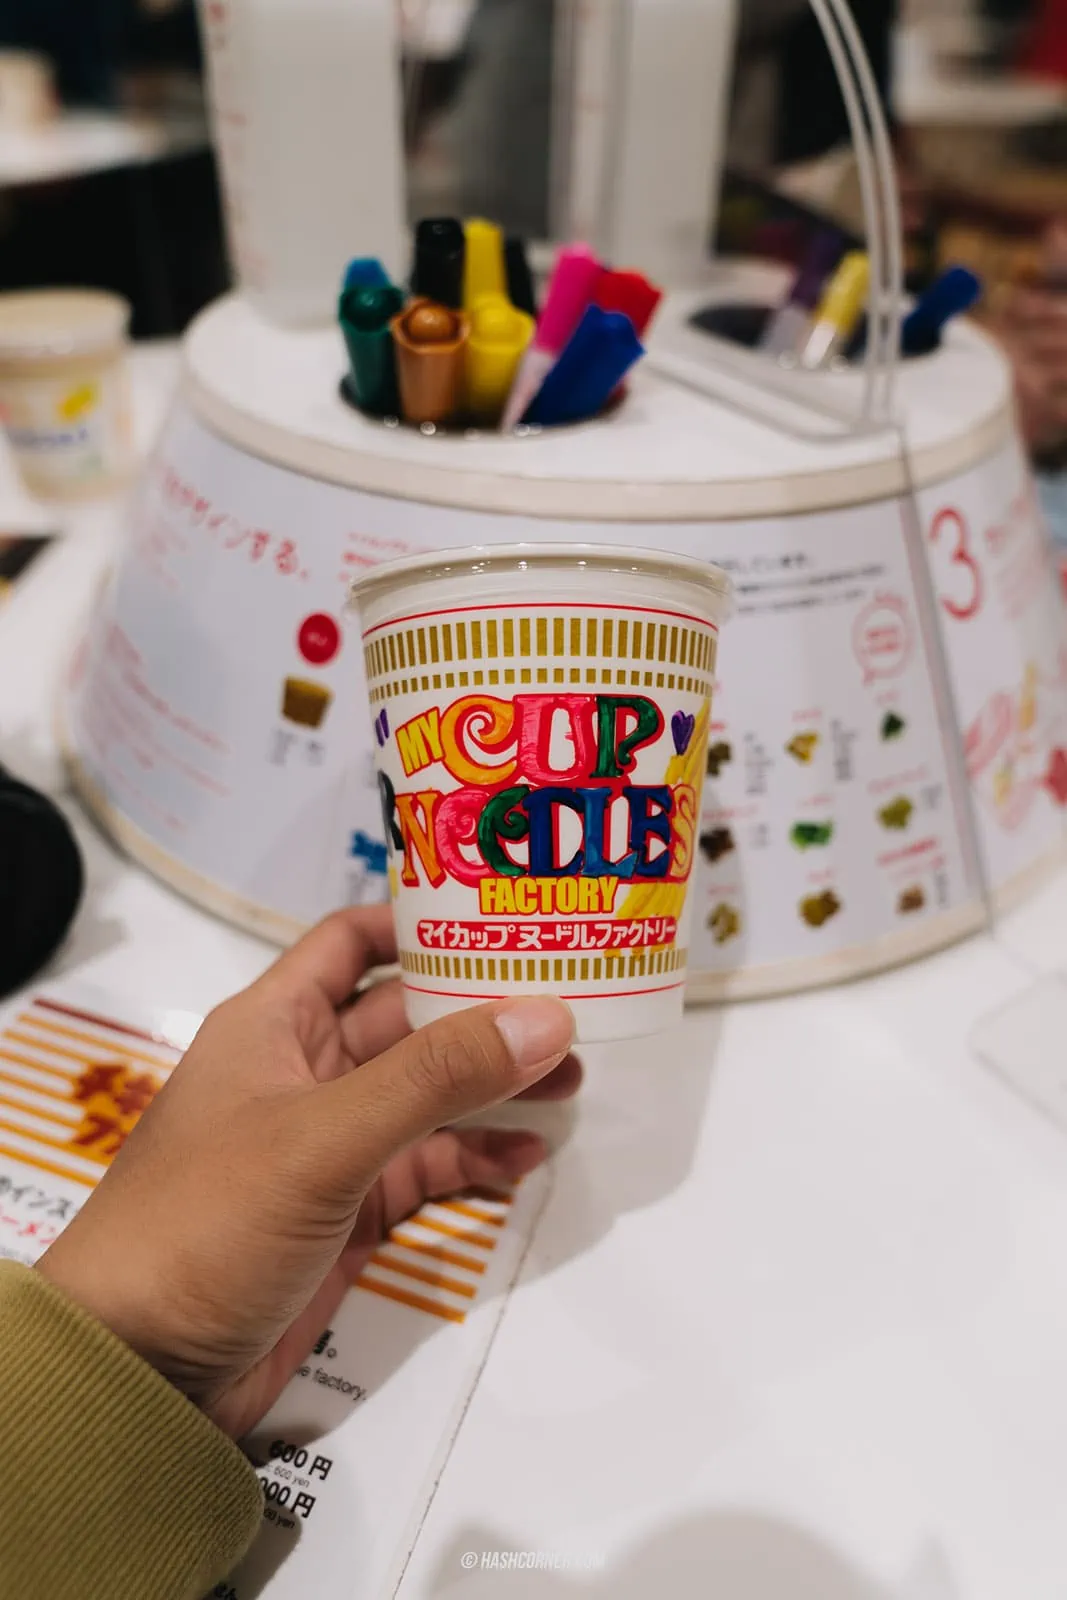 รีวิว Cup Noodles Museum x โยโกฮาม่า พิพิธภัณฑ์บะหมี่นิชชิน